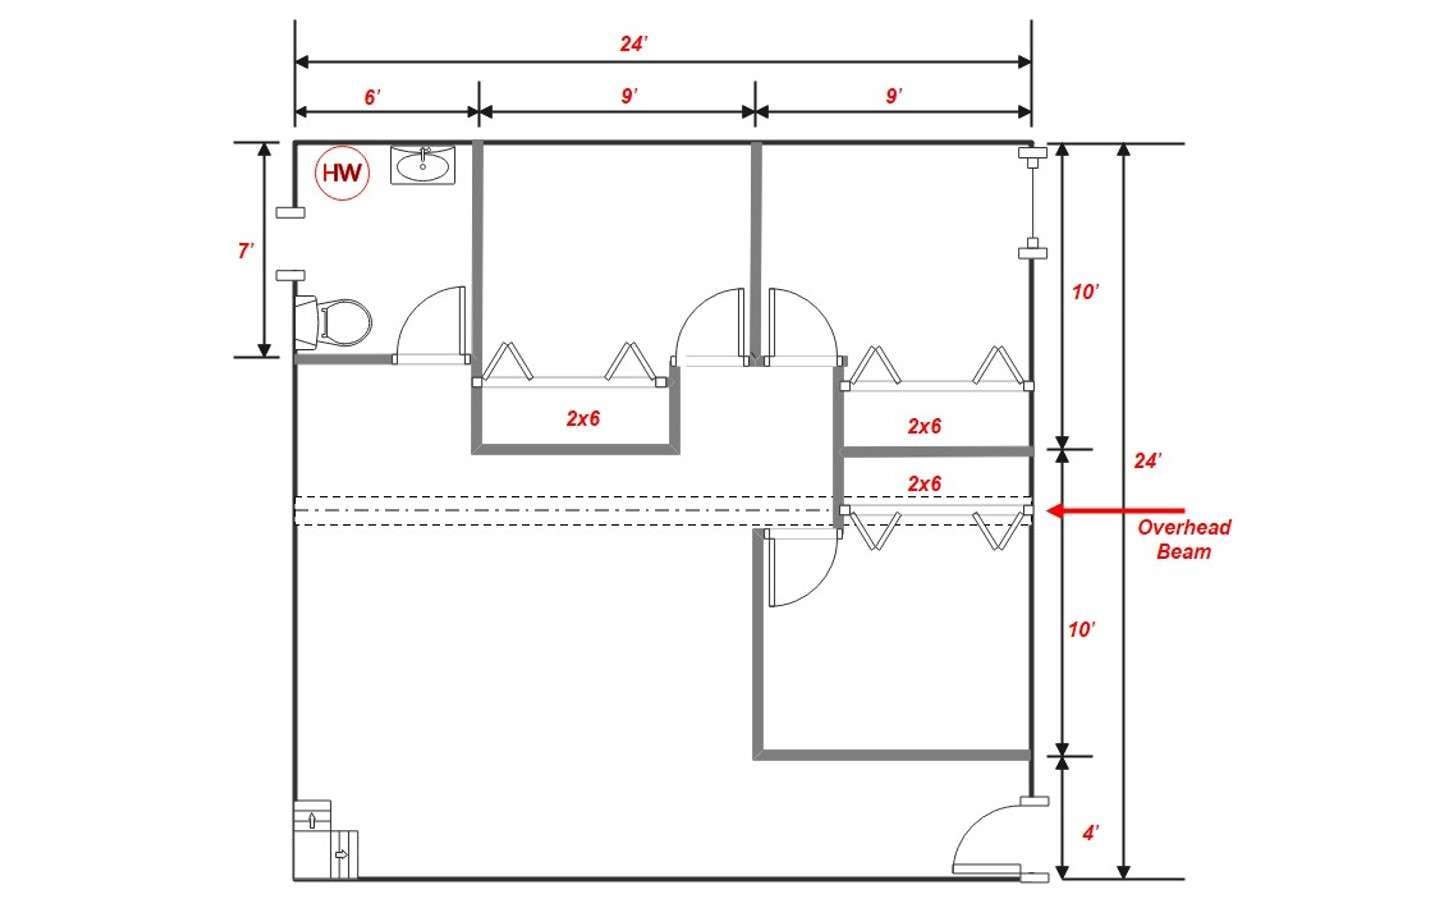 basement floor plan with overhead beam